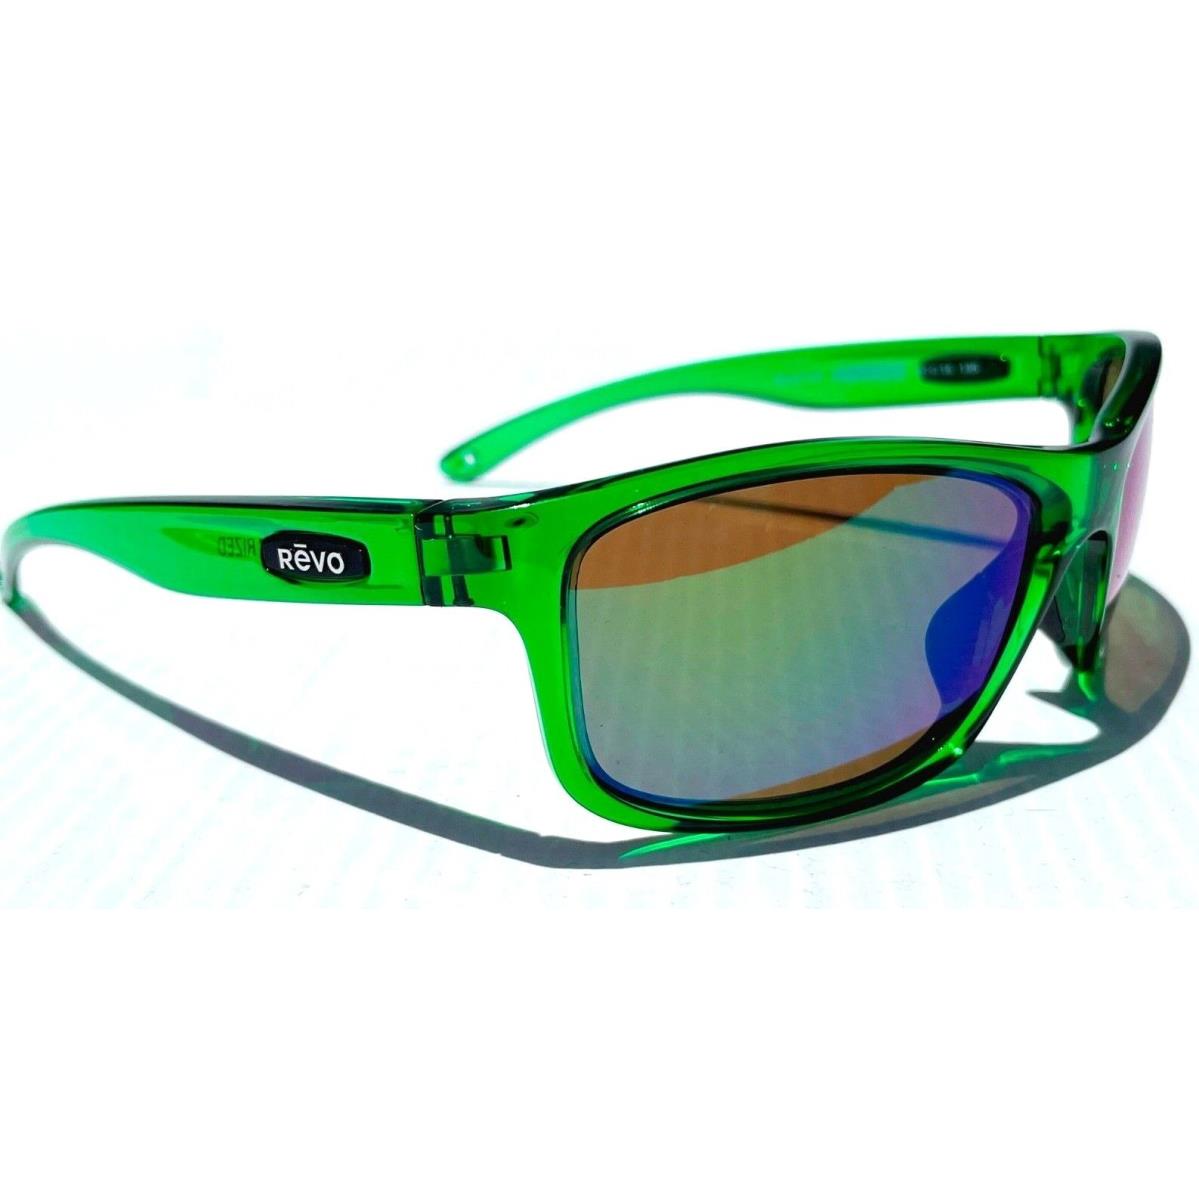 Revo sunglasses Harness - Green Frame, Green Lens 1